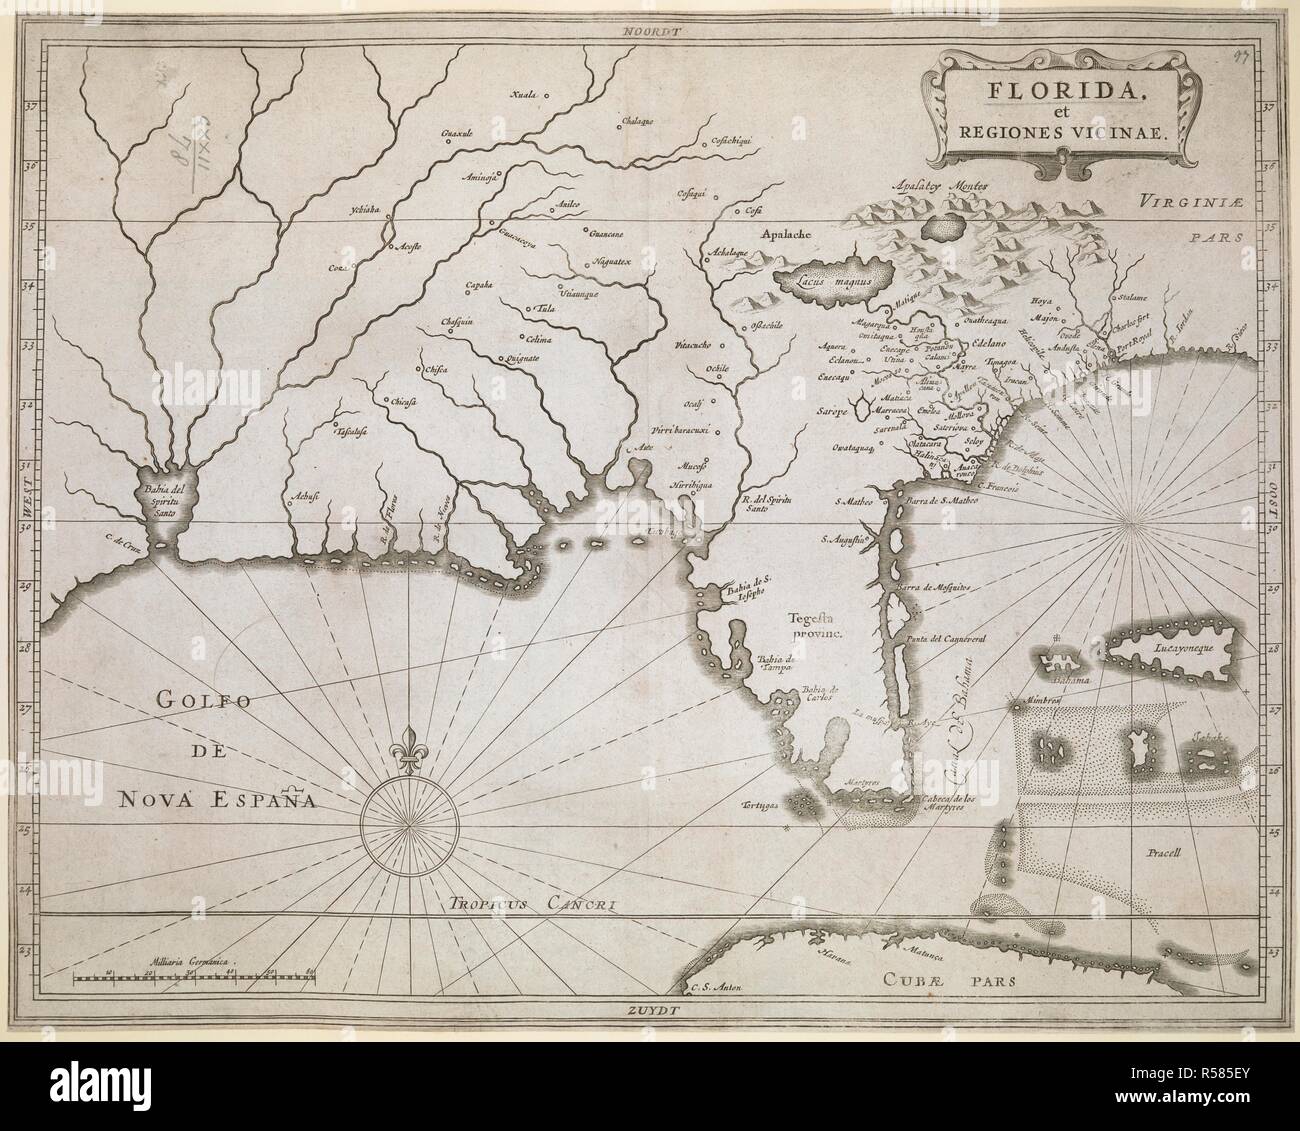 Una mappa della Florida e delle regioni limitrofe. FLORIDA, et REGIONES VICINAE. [Leiden] : [Joannes de Laet], [tra il 1630 e il 1640.]. Incisione su rame. Fonte: Mappe K.Top.122.78. Lingue: Latina. Foto Stock